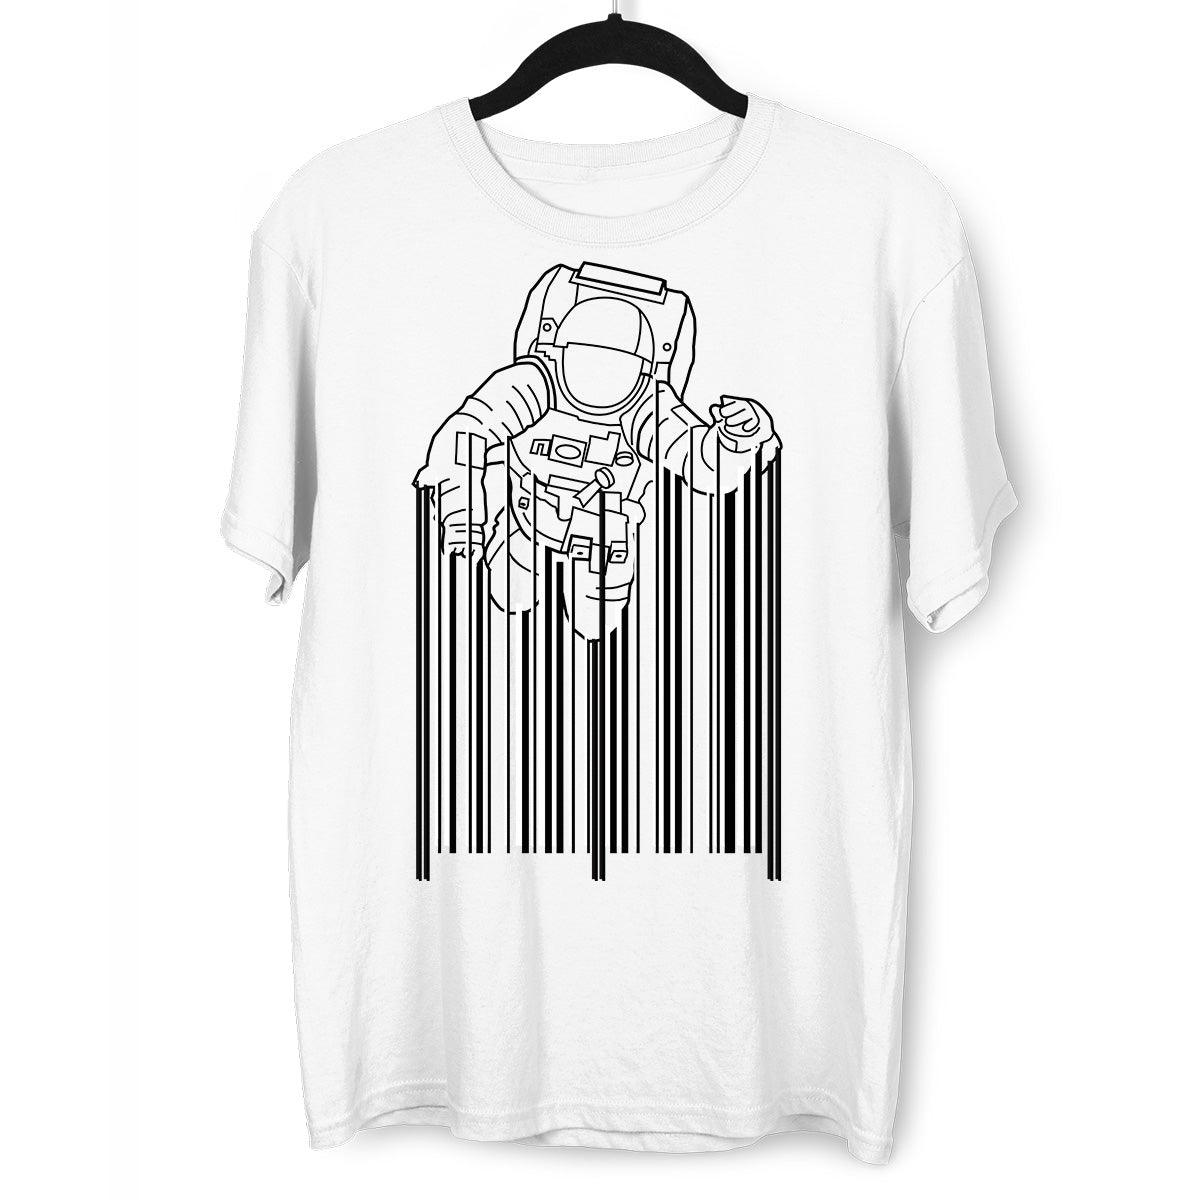 Astronaut with barcode T-Shirt Black & White t-shirt design - Kuzi Tees